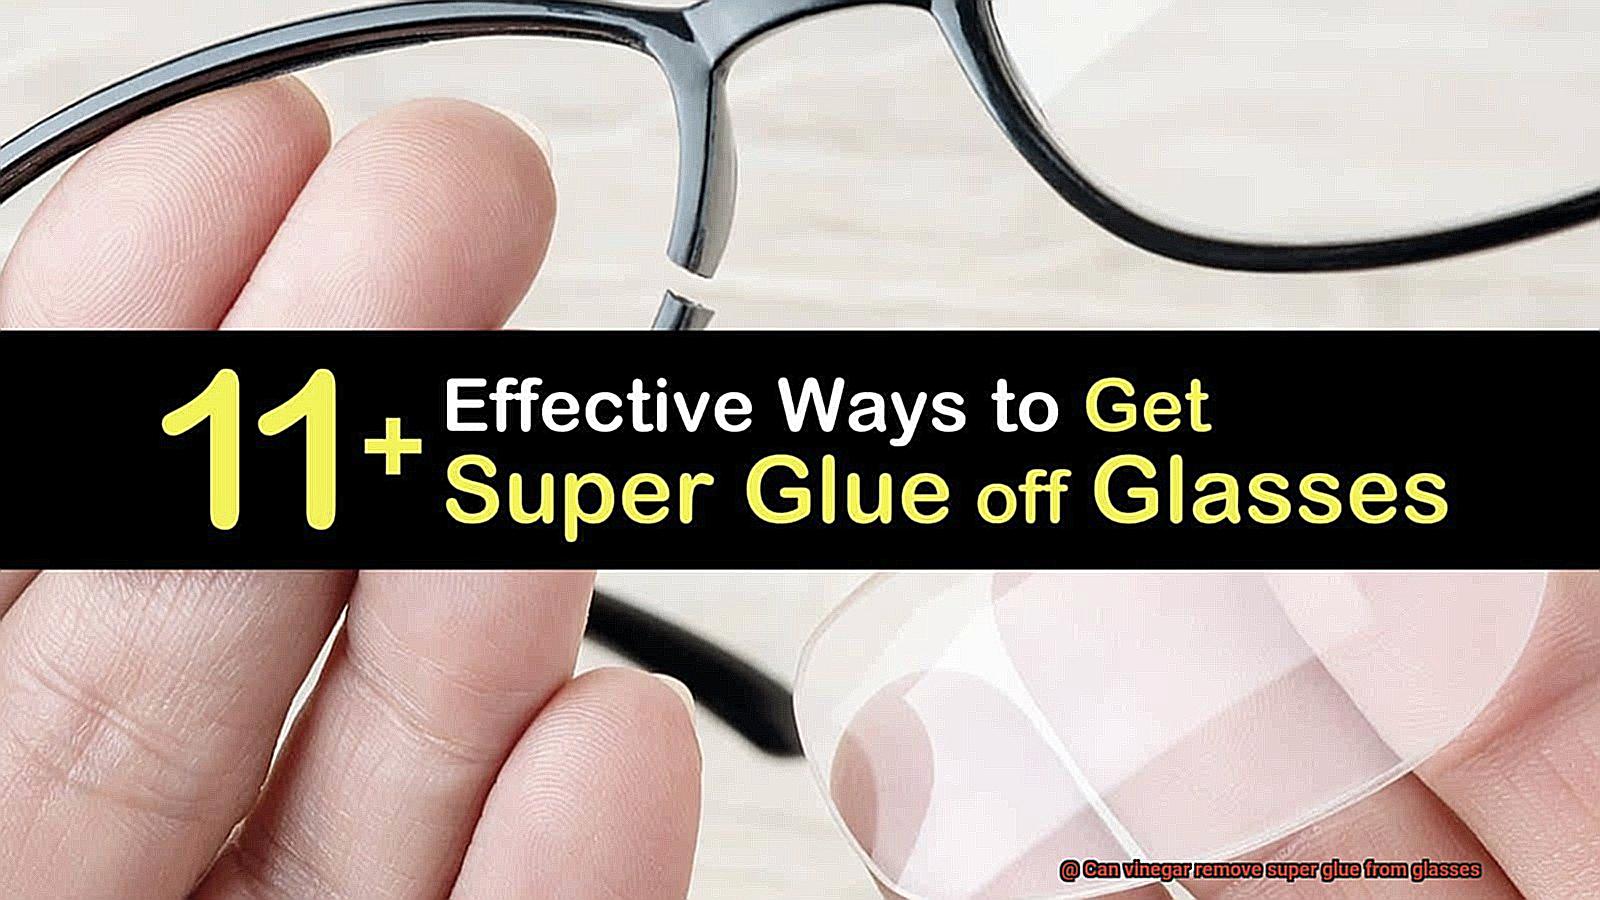 Can vinegar remove super glue from glasses-7